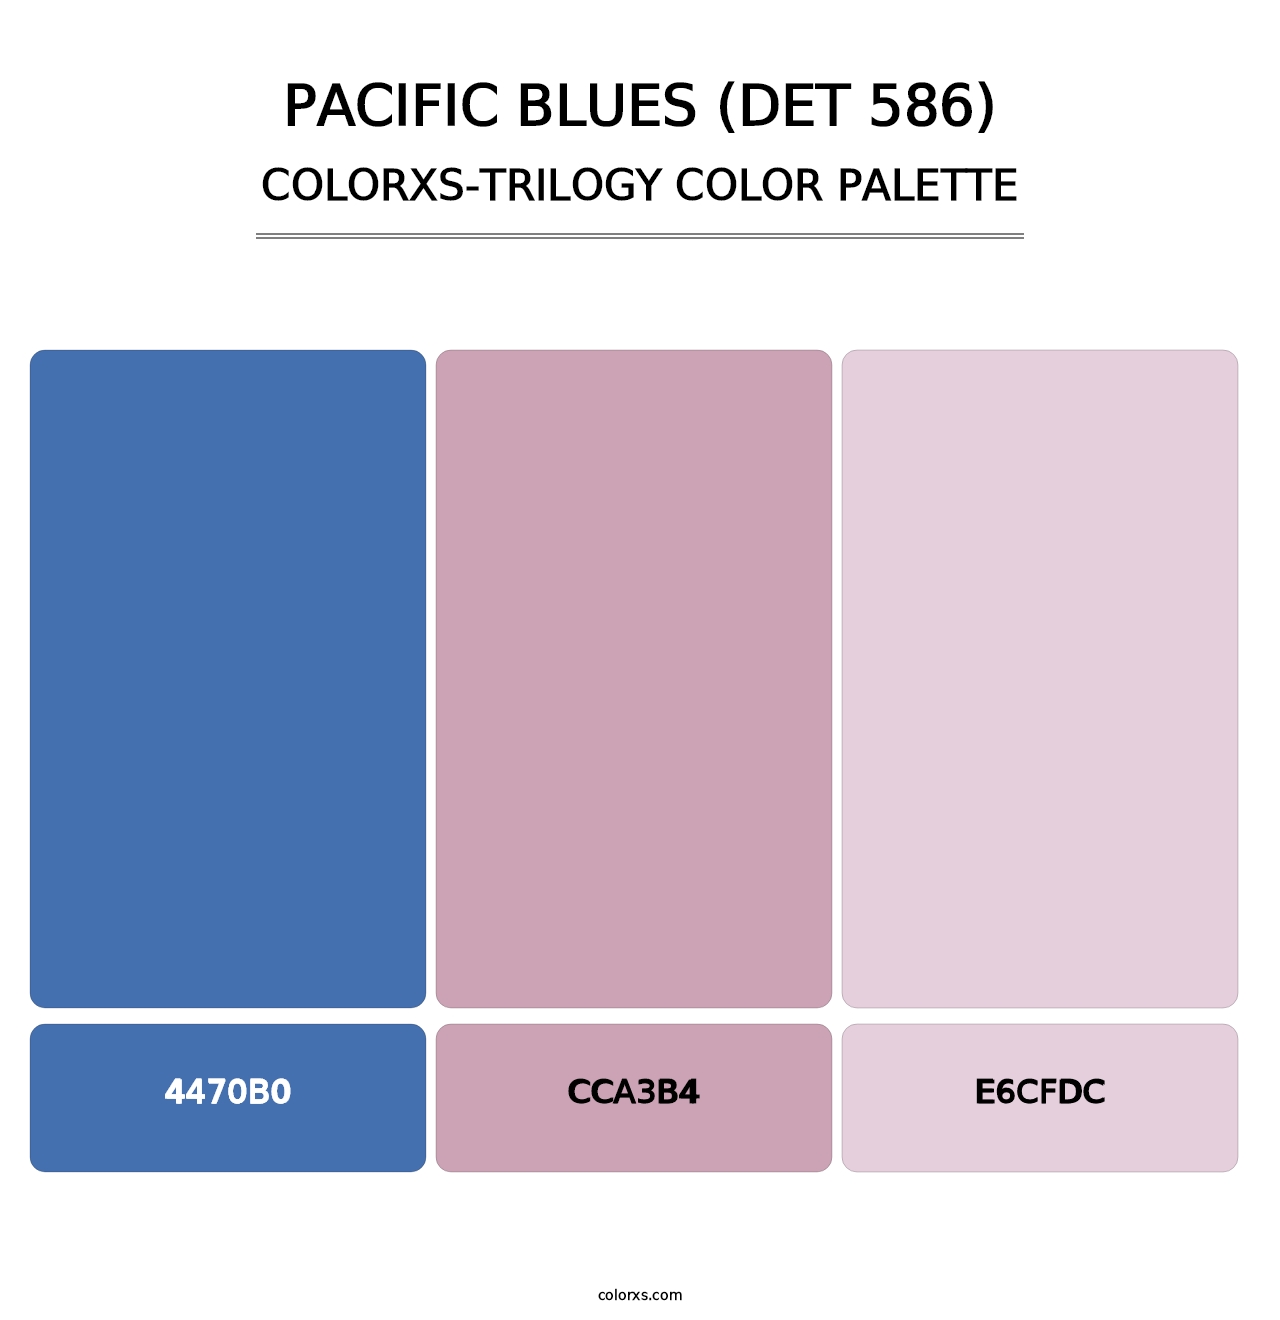 Pacific Blues (DET 586) - Colorxs Trilogy Palette